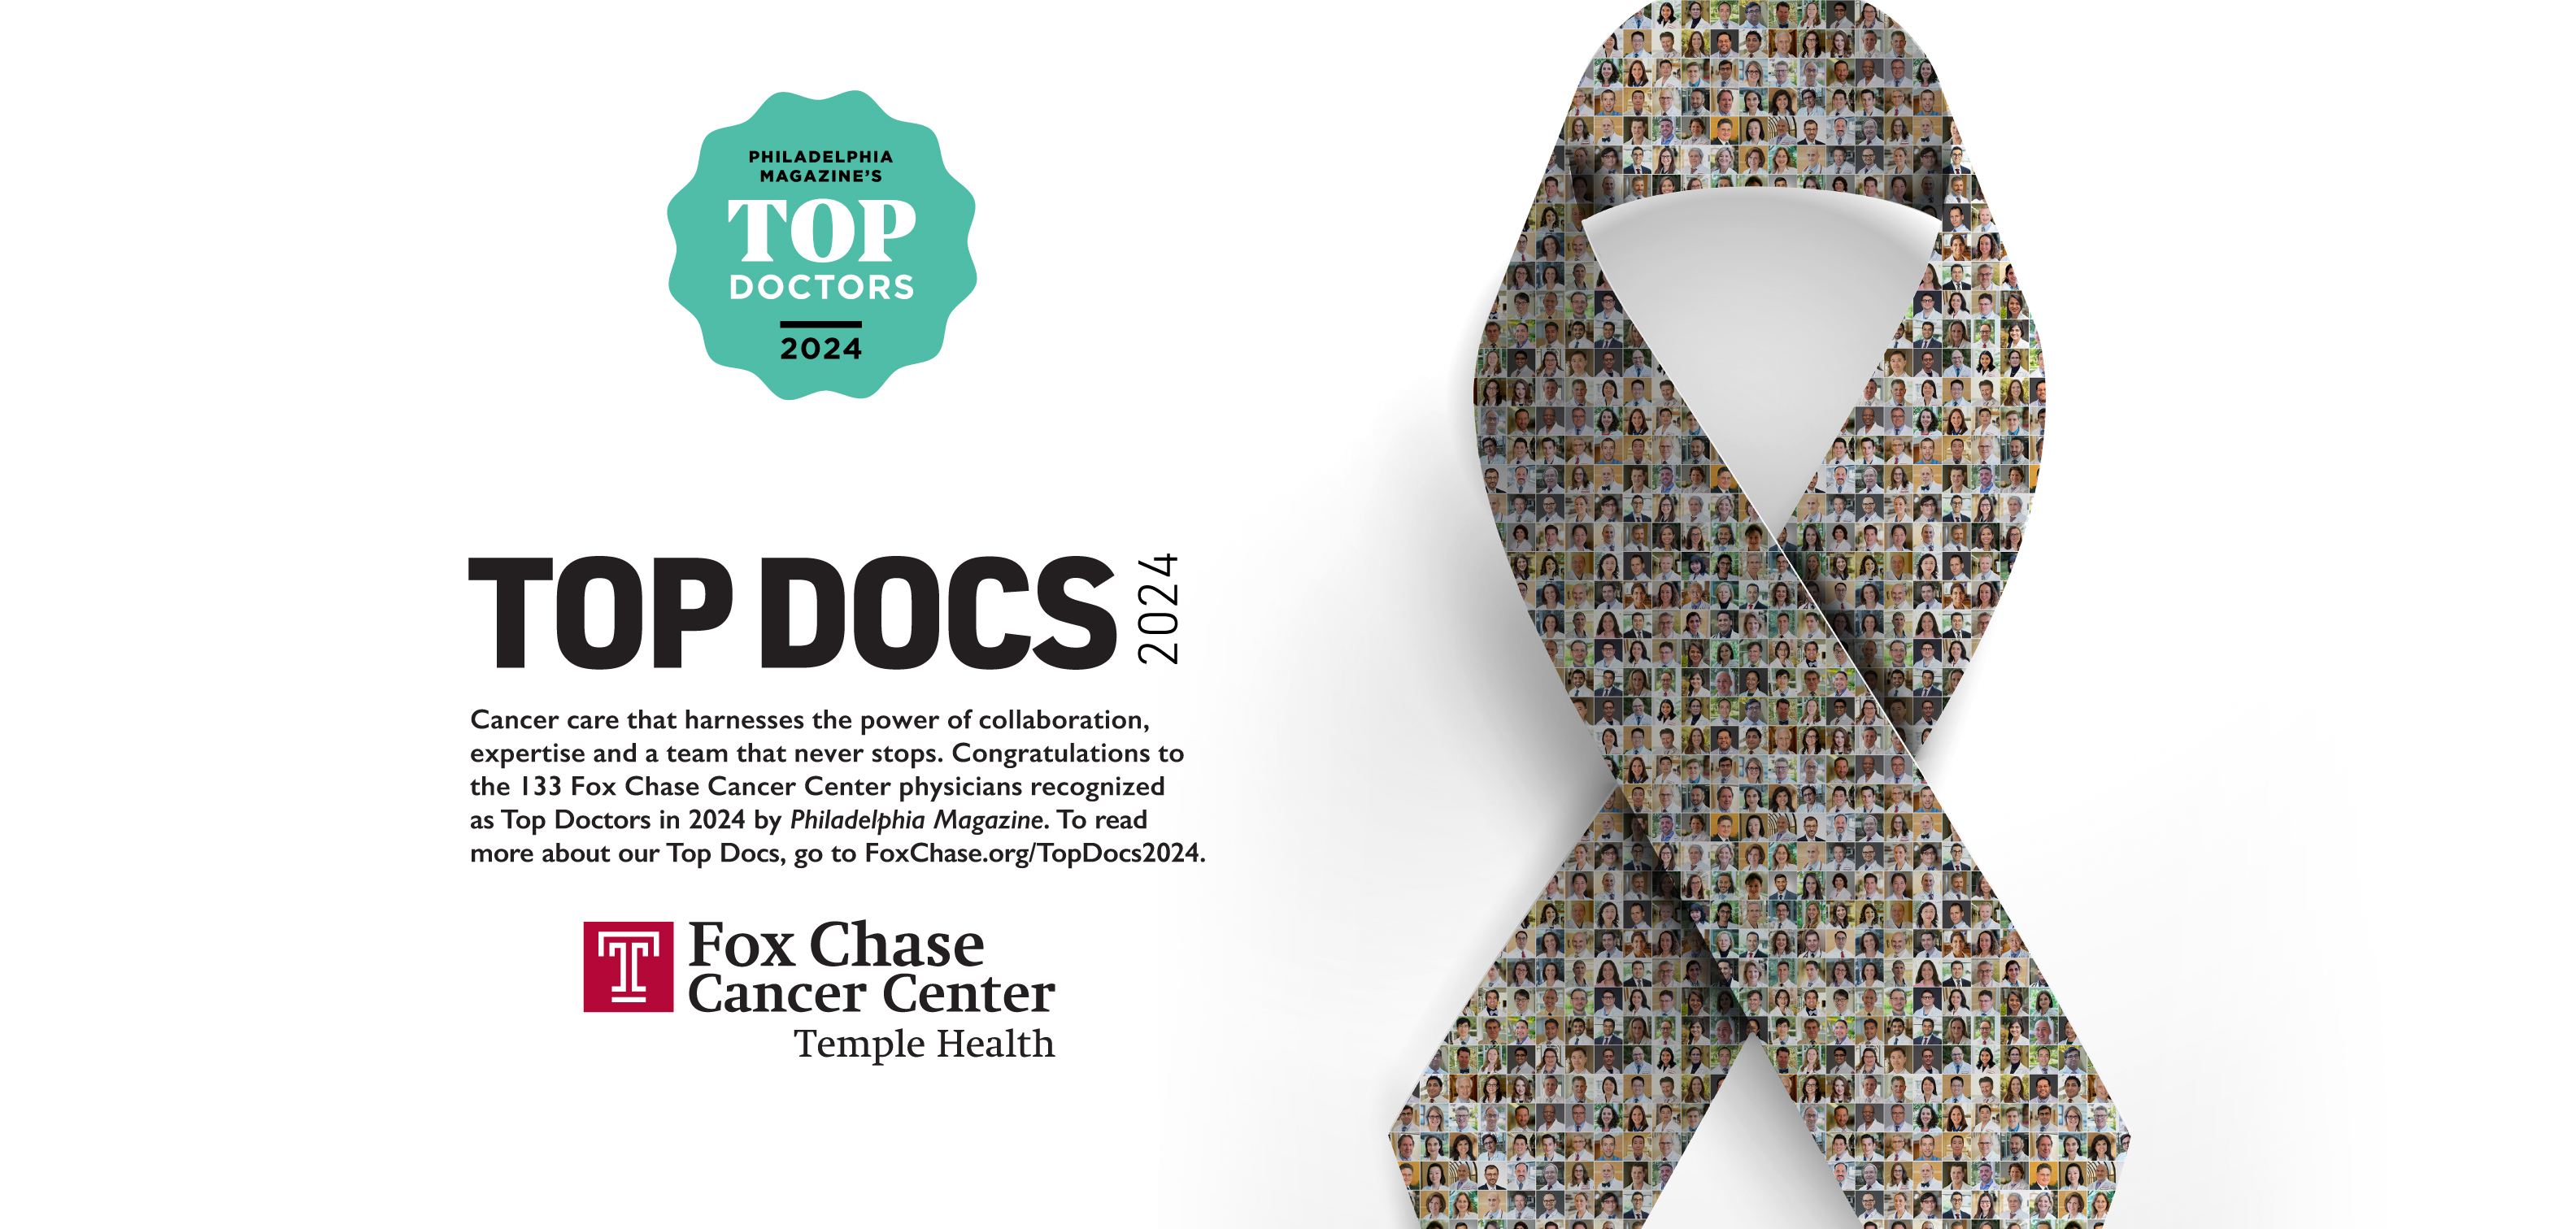 Top Docs 2024 recognized by Philadelphia Magazine